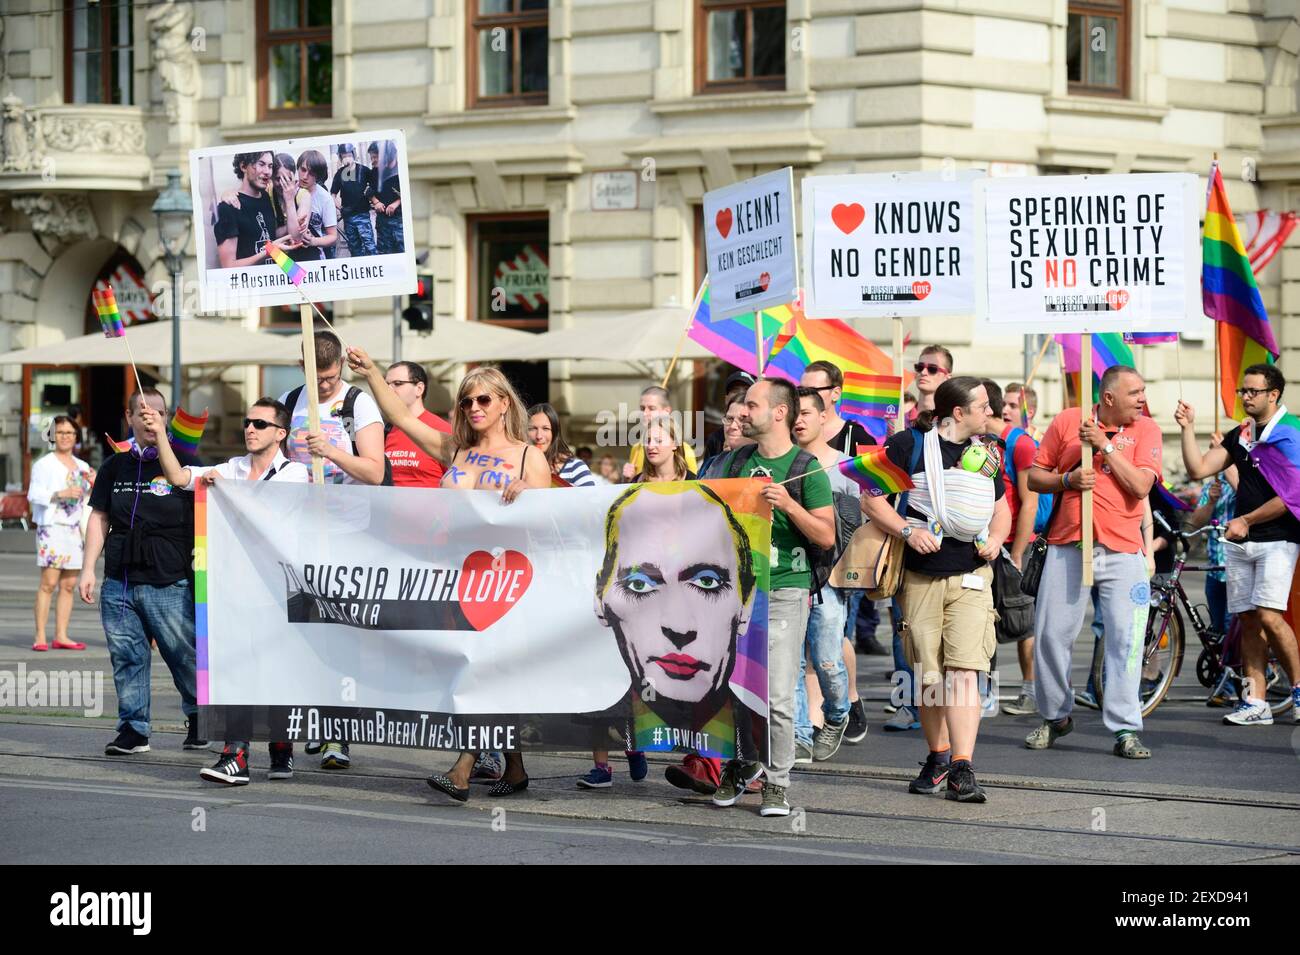 Vienne, Autriche. 24 juin 2014. Marche de protestation en Russie avec amour. Signe de solidarité avec les lesbiennes, les gays et les personnes transgenres et protestation contre l'aggravation de la situation des droits de l'homme en Russie. Banque D'Images